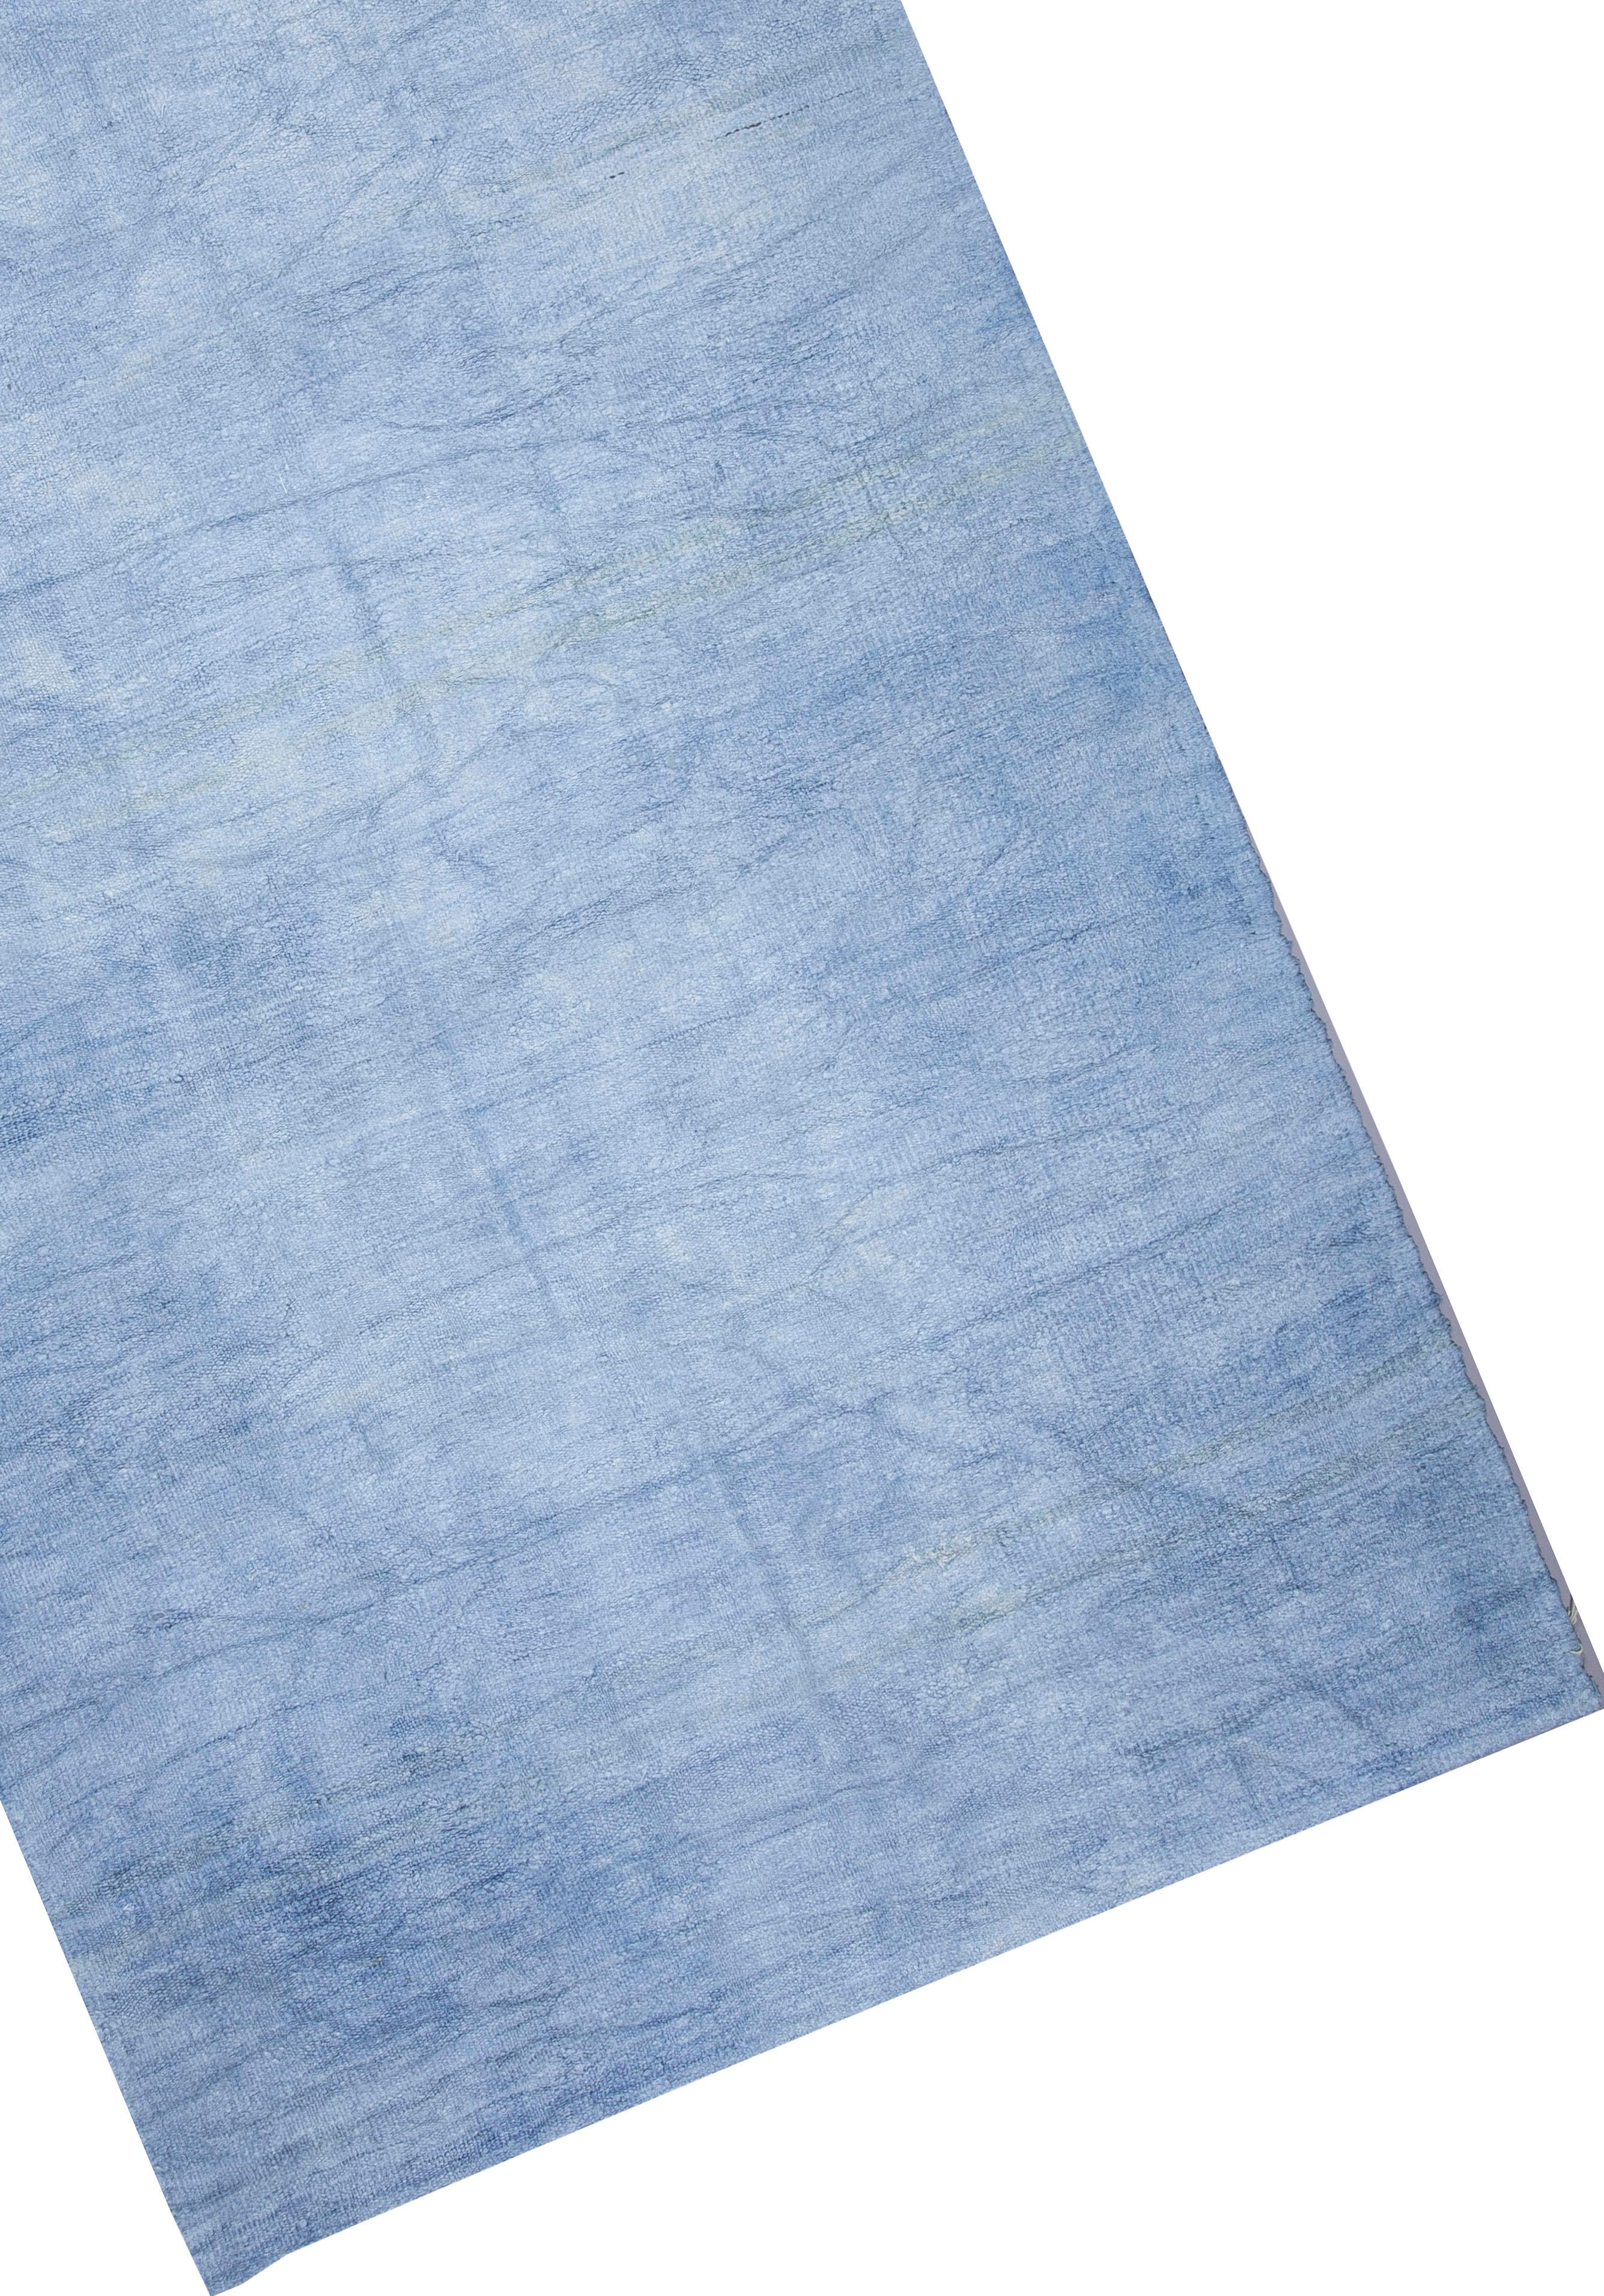 Vieux tapis turc en chanvre tissé à plat. Kilim vintage en chanvre tissé à plat à la main. L'armure est une simple armure tabby ou unie. Il n'y a pas de frontières. La texture est robuste, grossière et ferme, et un bon pad est recommandé. Ils sont